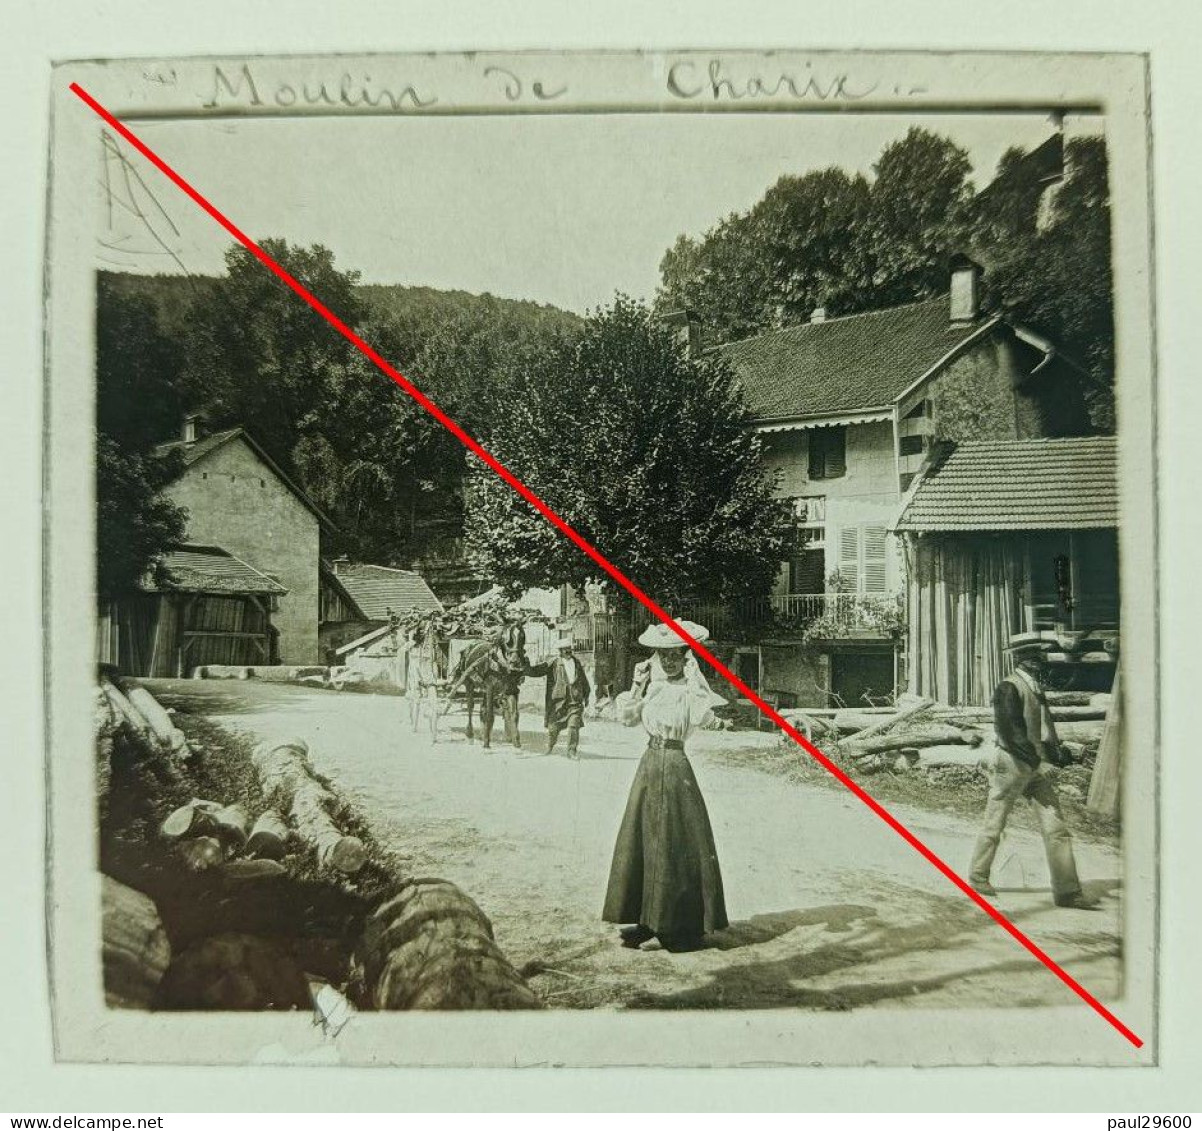 Photo Sur Plaque De Verre, L'ain, Moulin De Charix, Village, Maison, Rue, Attelage, Hangars, Bâtiments, Années 1930. - Diapositiva Su Vetro